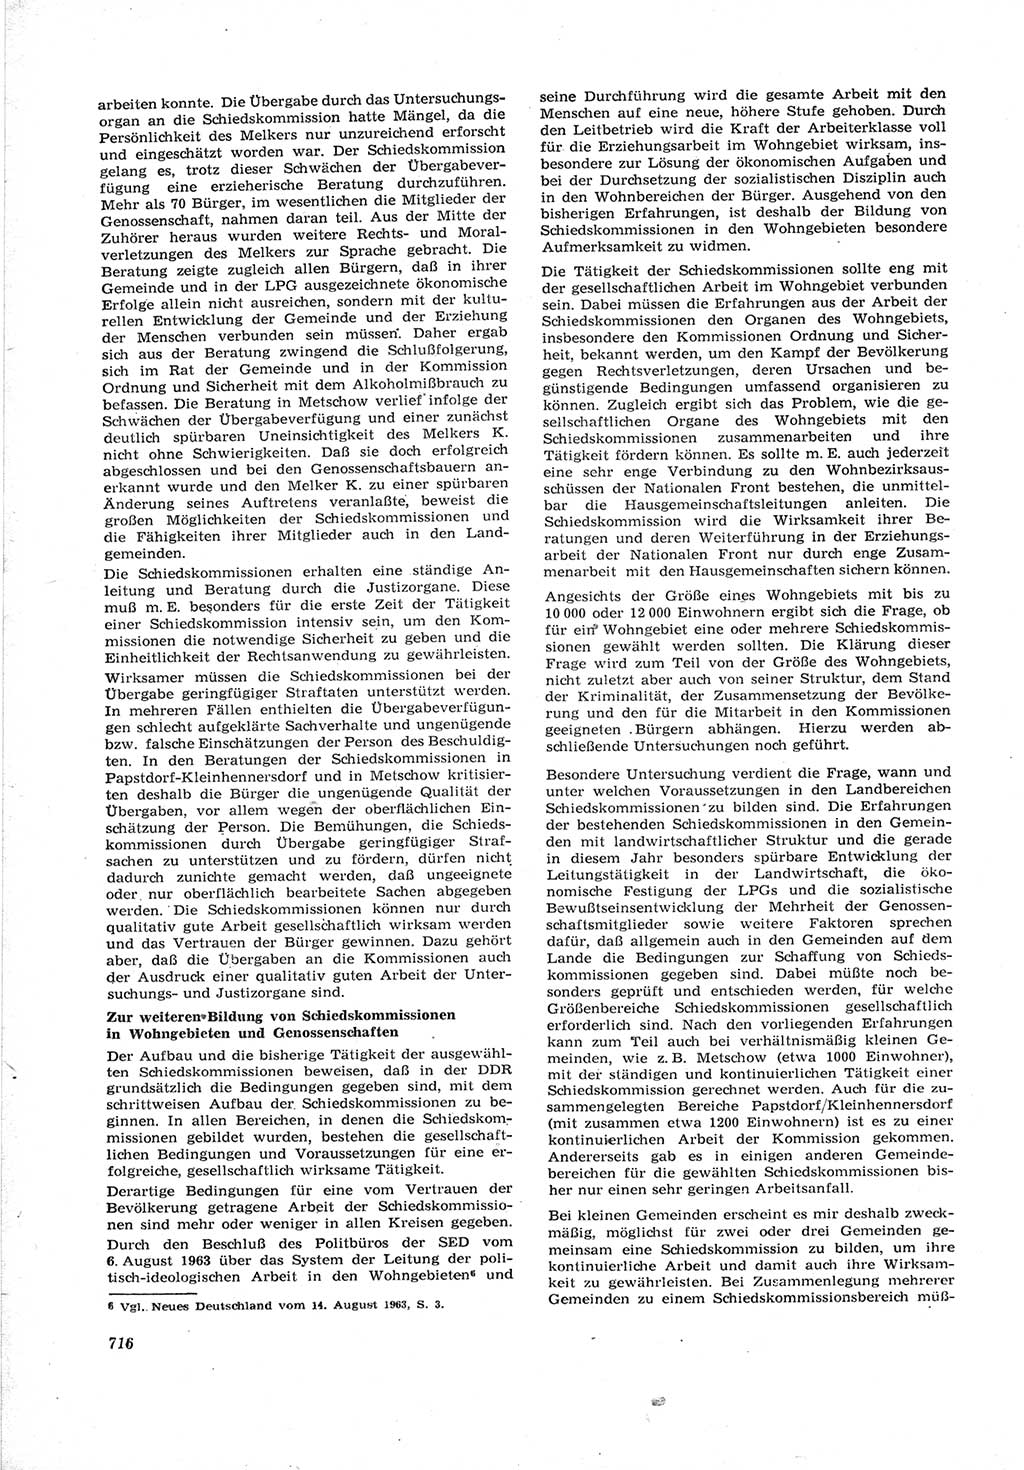 Neue Justiz (NJ), Zeitschrift für Recht und Rechtswissenschaft [Deutsche Demokratische Republik (DDR)], 17. Jahrgang 1963, Seite 716 (NJ DDR 1963, S. 716)